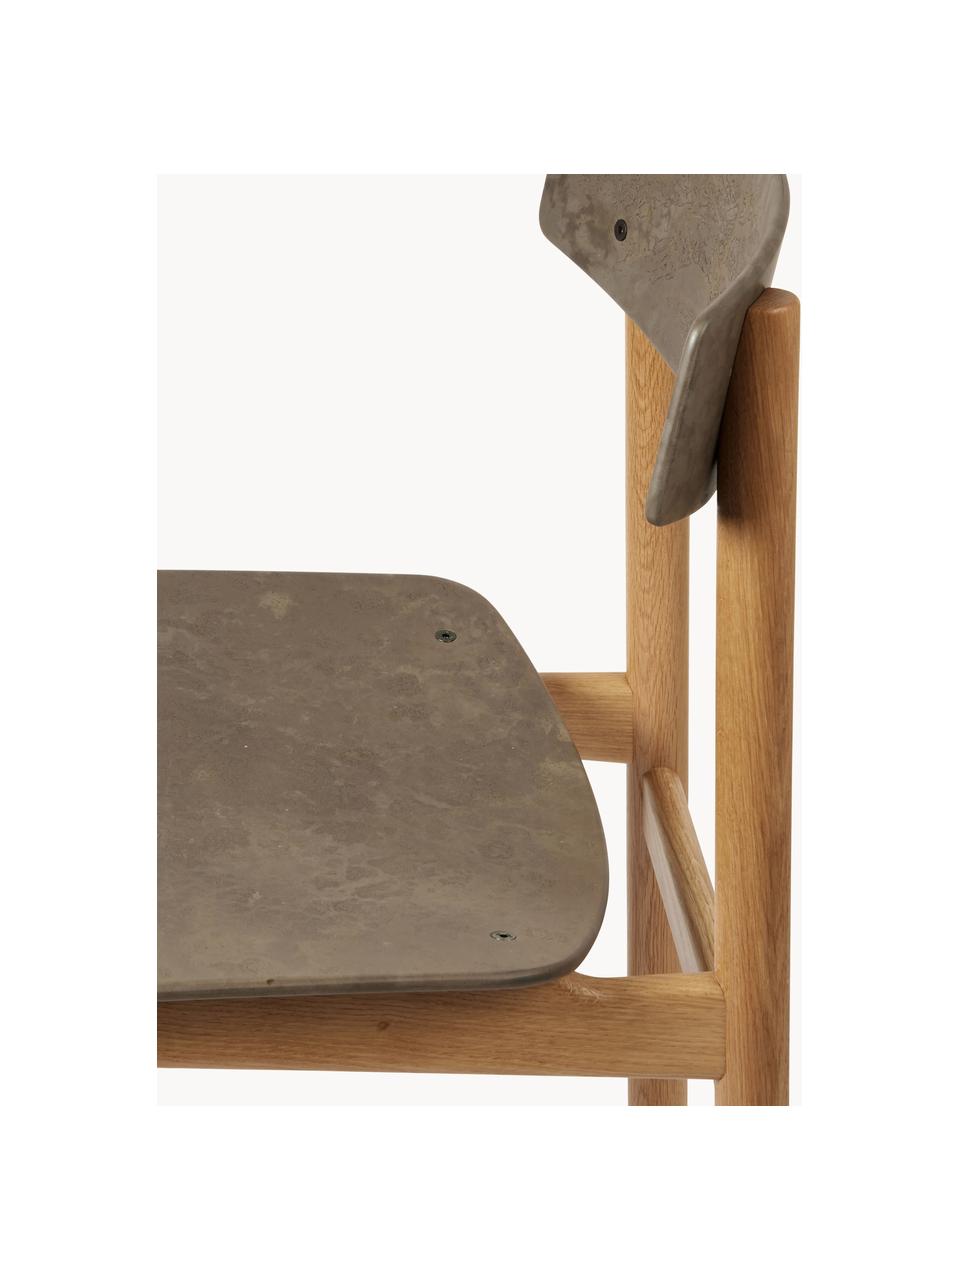 Dřevěná židle Conscious, Greige, dubové dřevo, Š 47 cm, H 47 cm